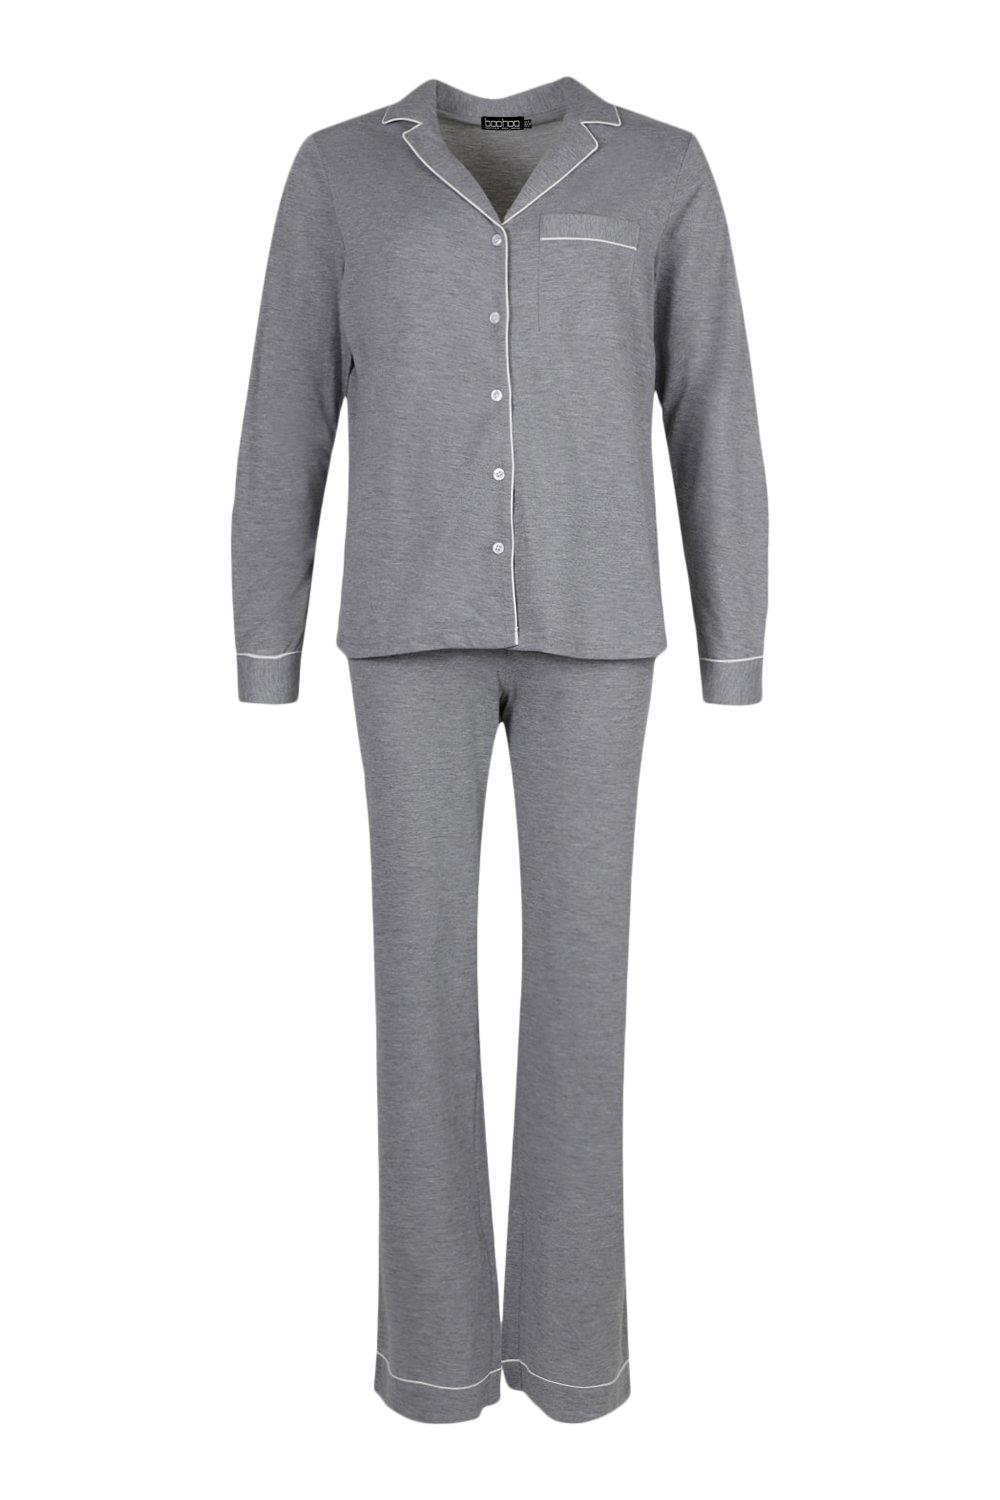 Women's Jersey Button PJ Long Sleeve Trouser Set